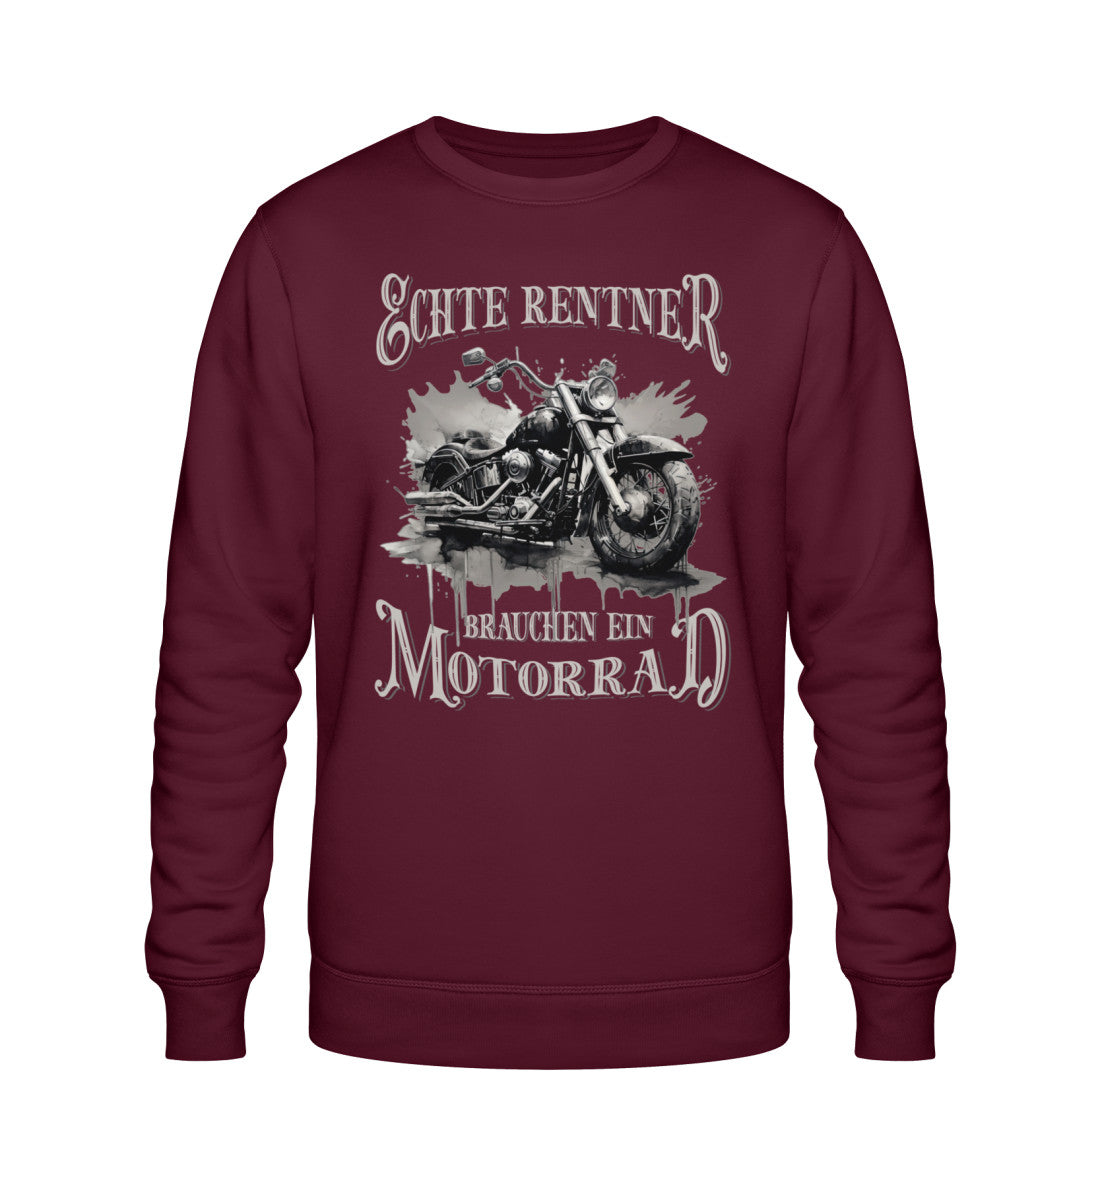 Ein Biker Sweatshirt für Motorradfahrer von Wingbikers mit dem Aufdruck, Echte Rentner brauchen ein Motorrad, in burgunder weinrot.